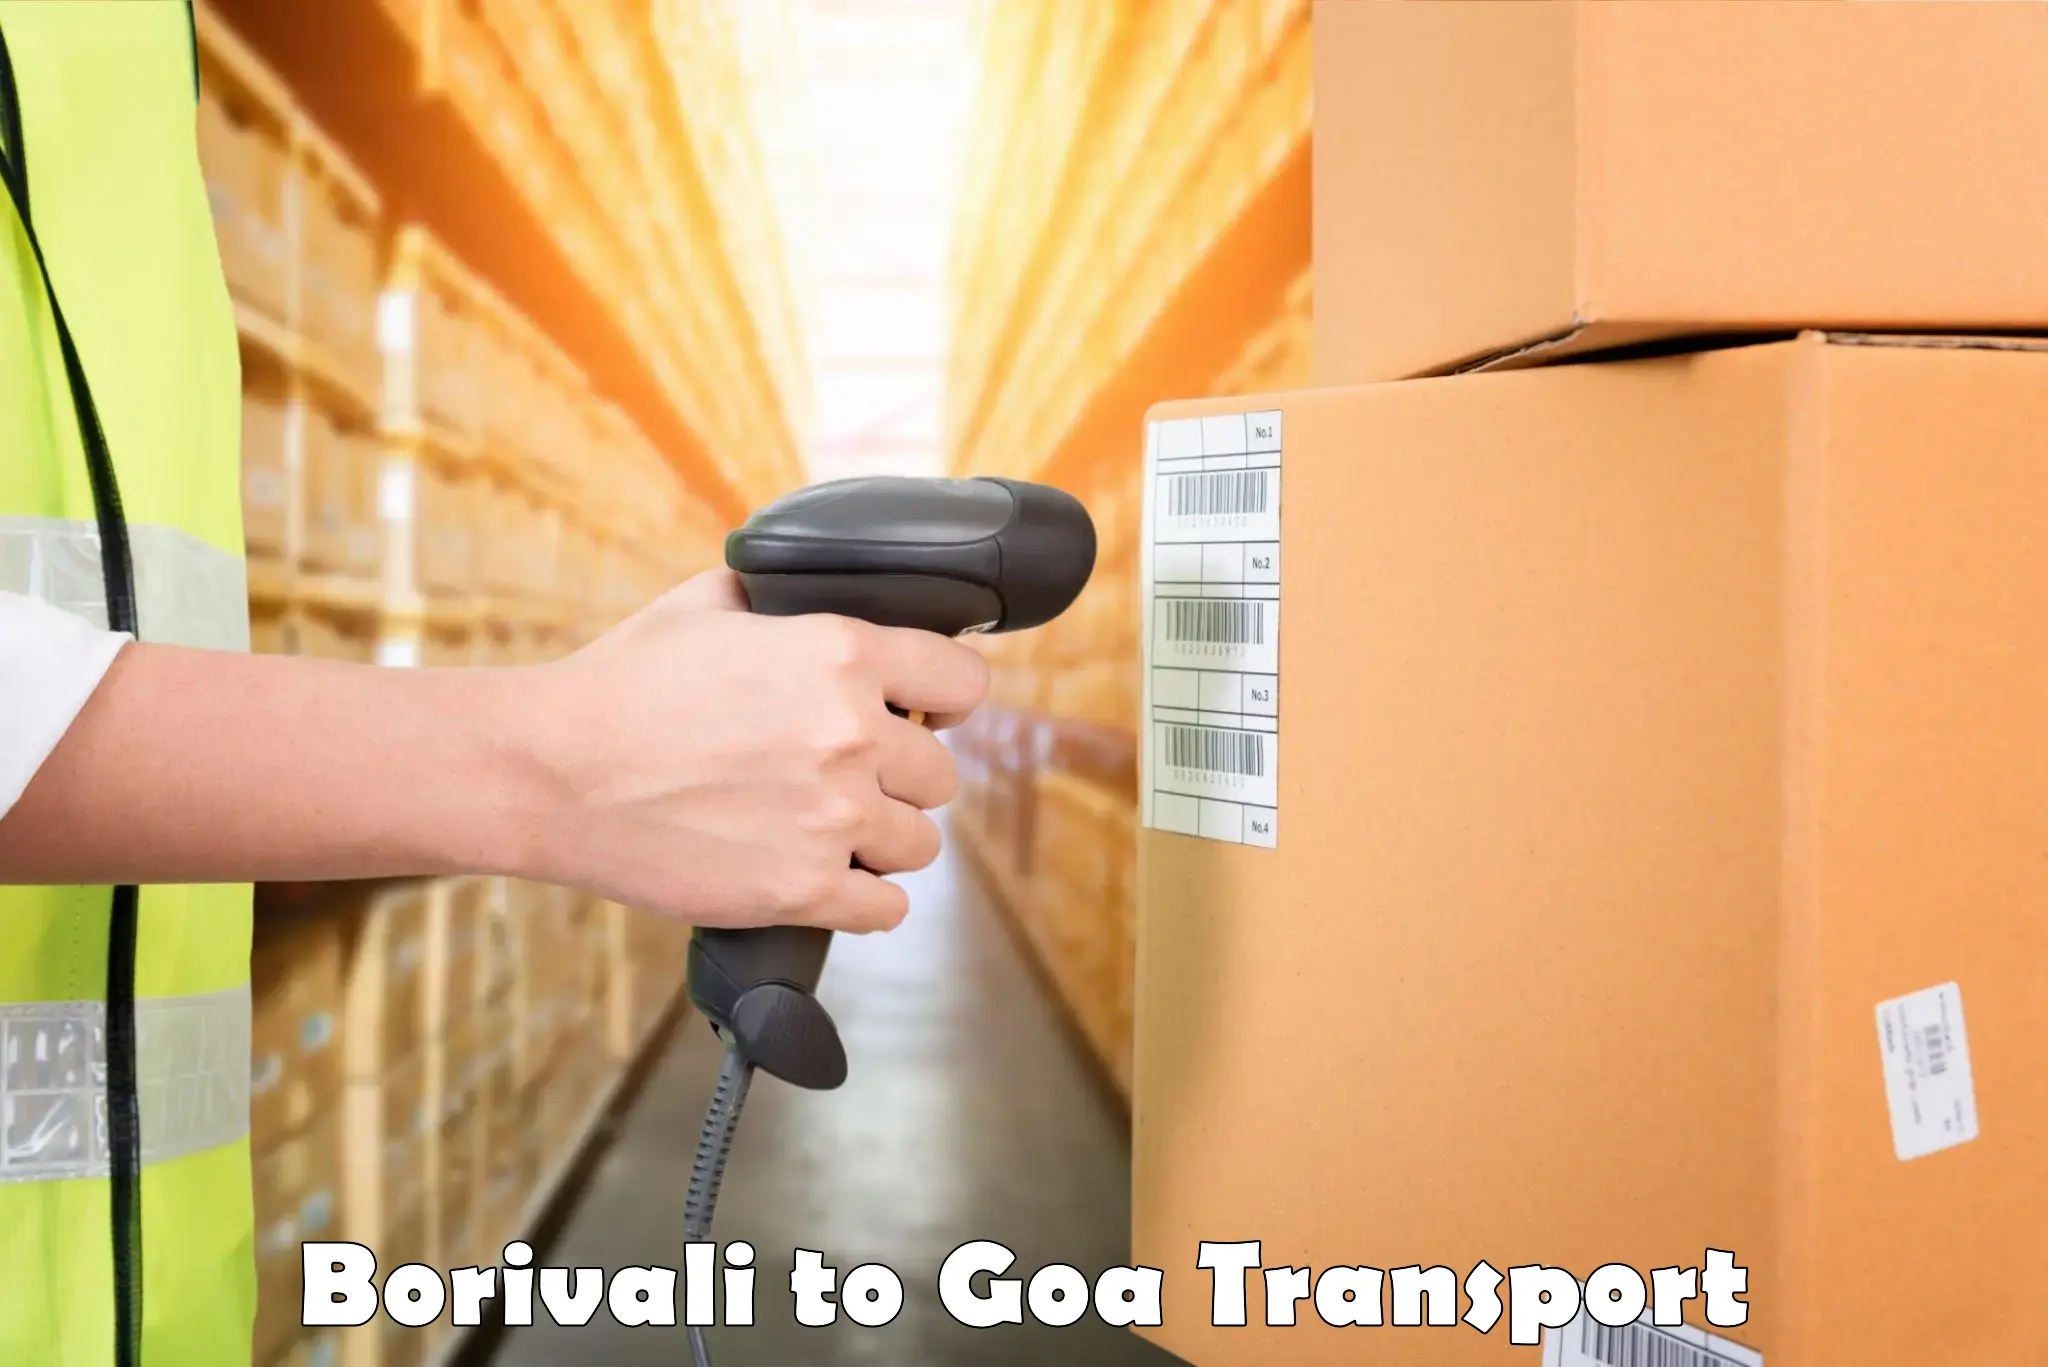 Transport in sharing Borivali to Vasco da Gama